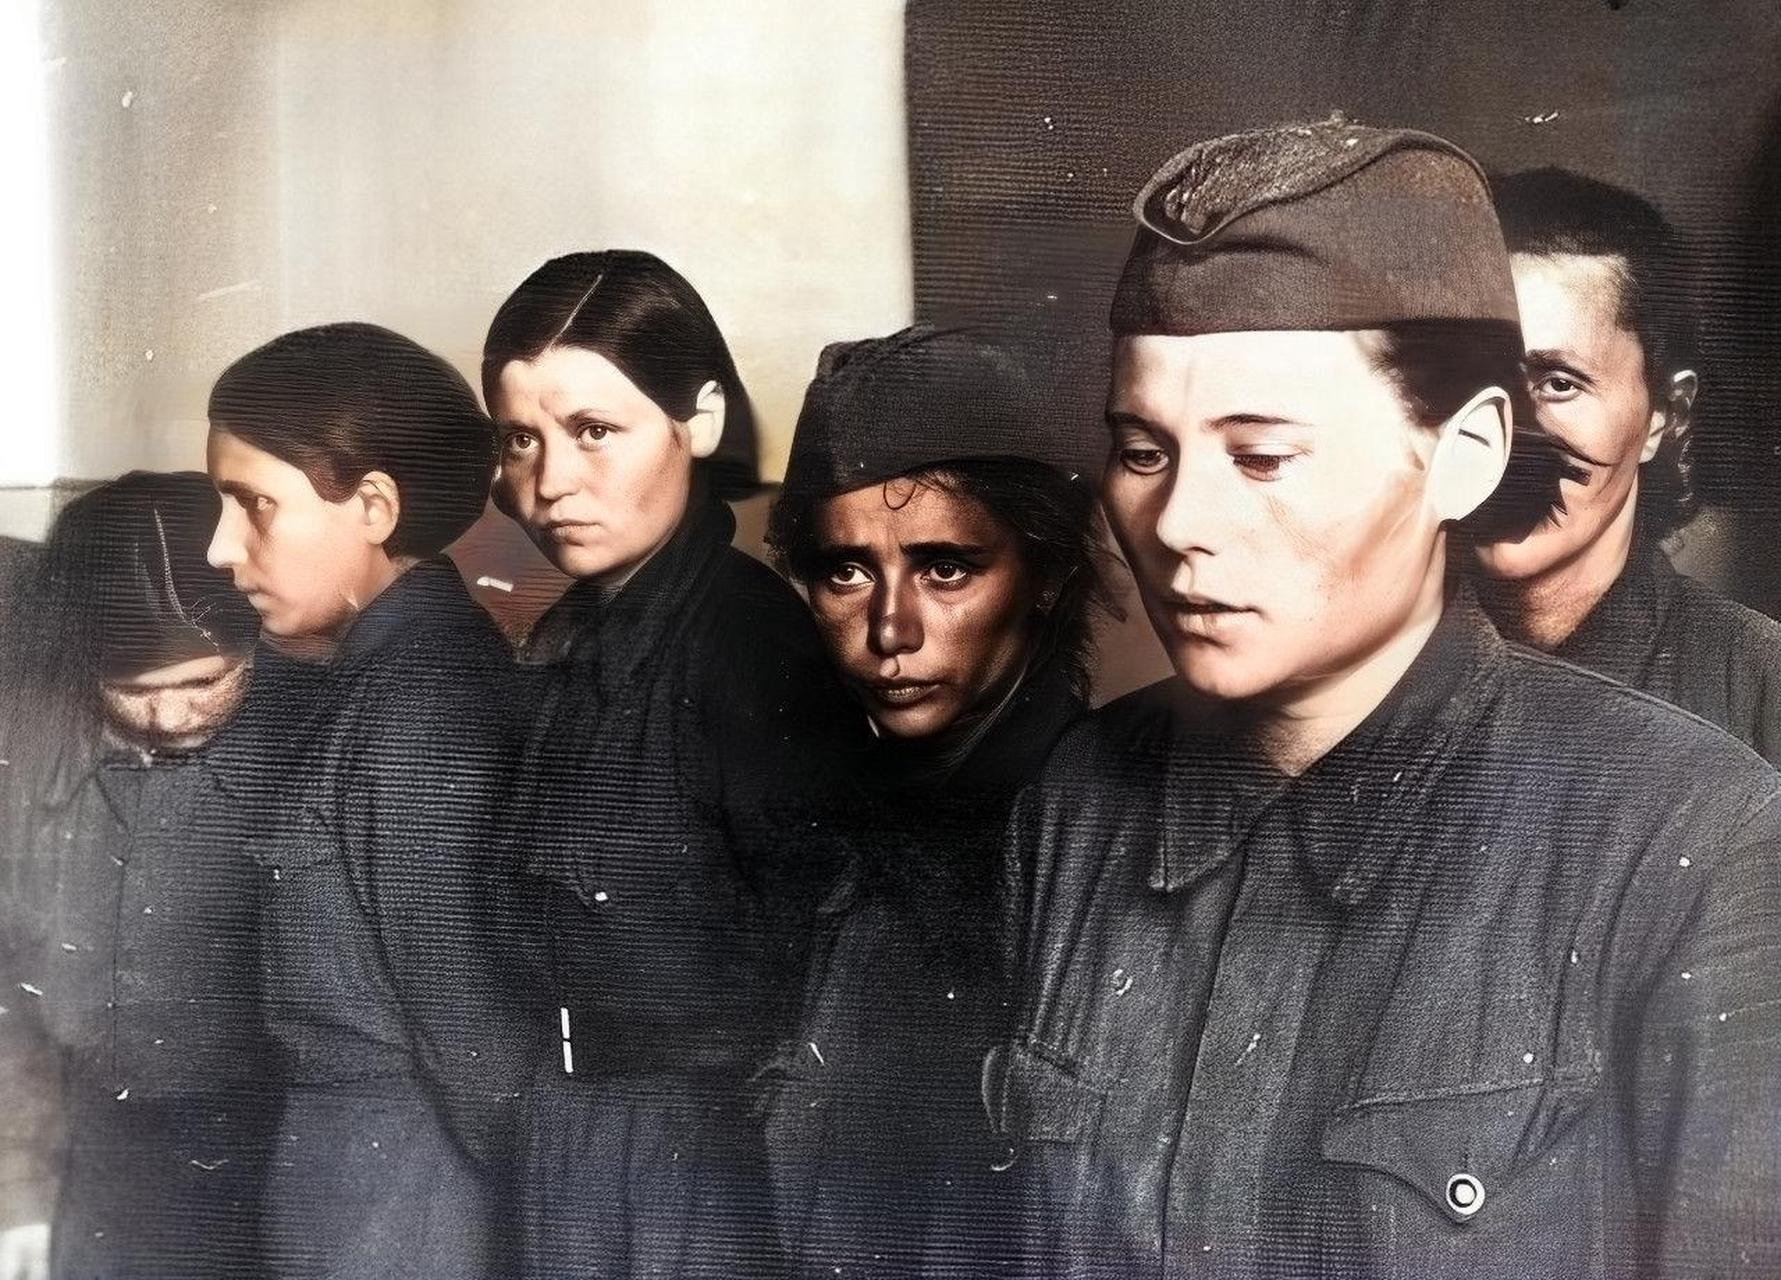 苏联女兵清洗图片